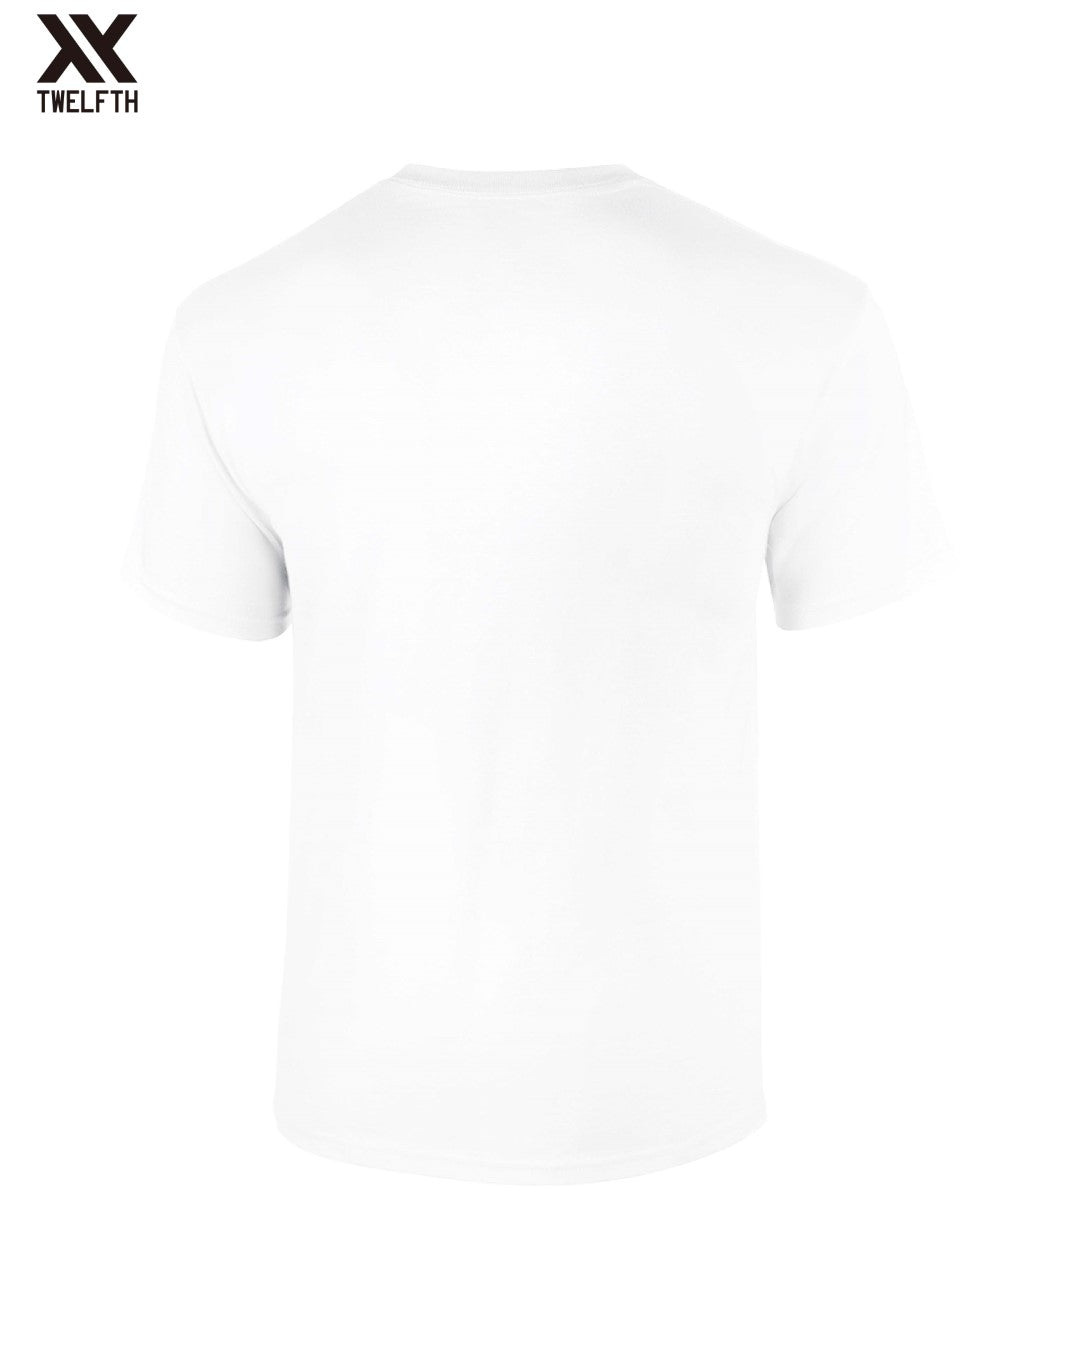 Finland Crest T-Shirt - Mens